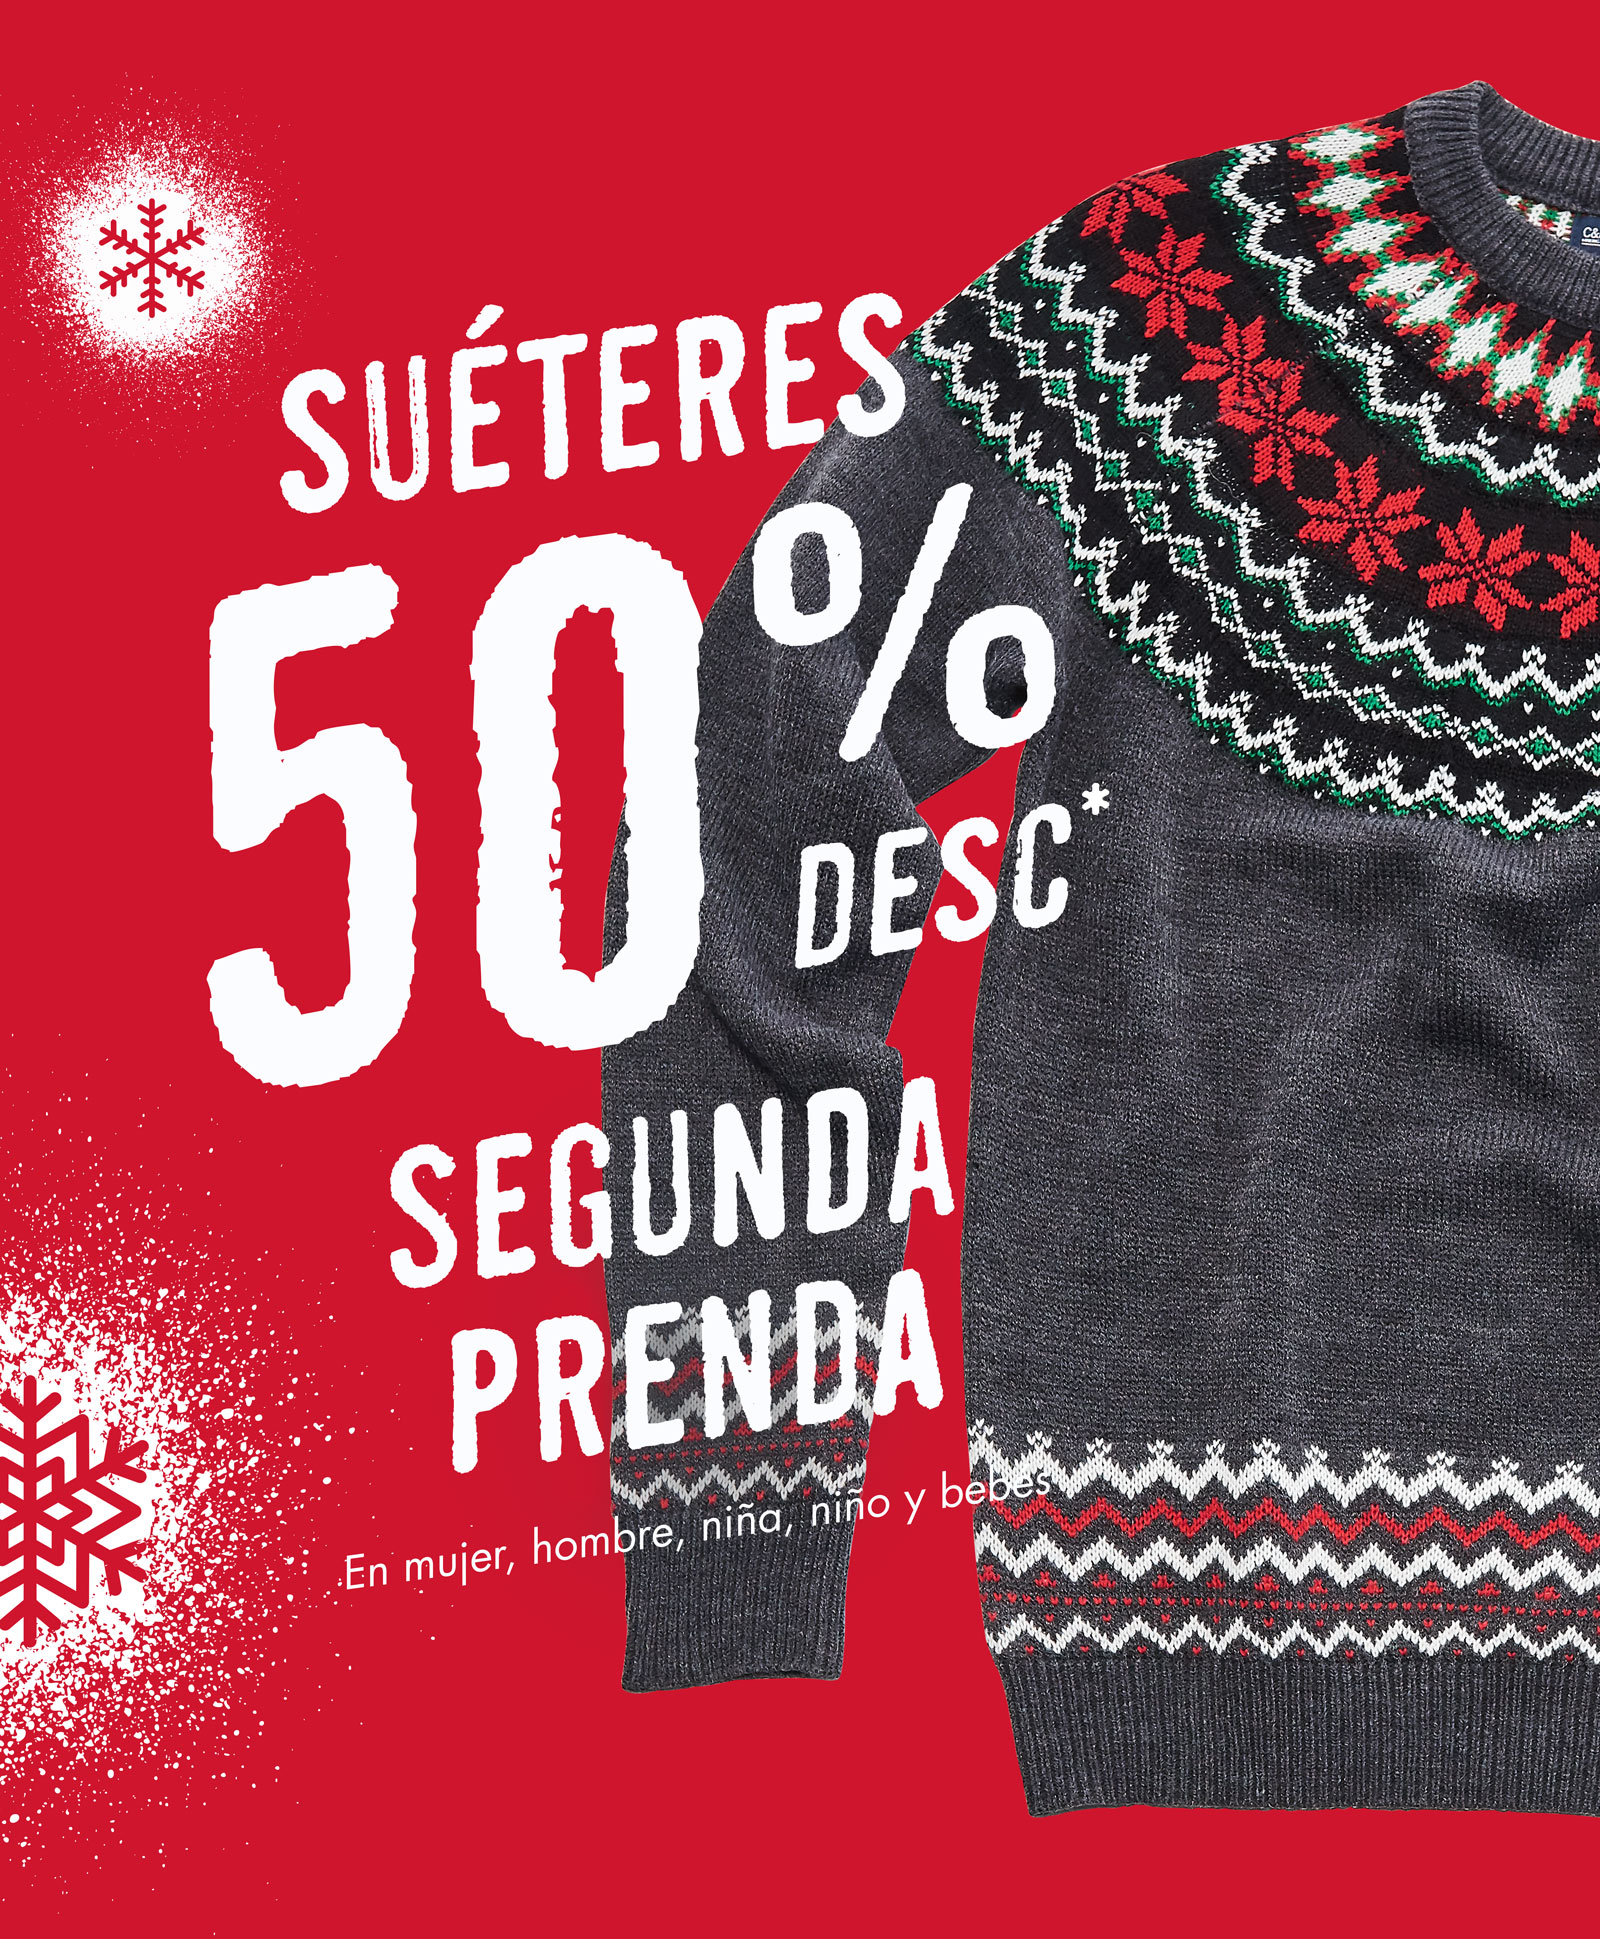 Sweaters 50% segunda prenda